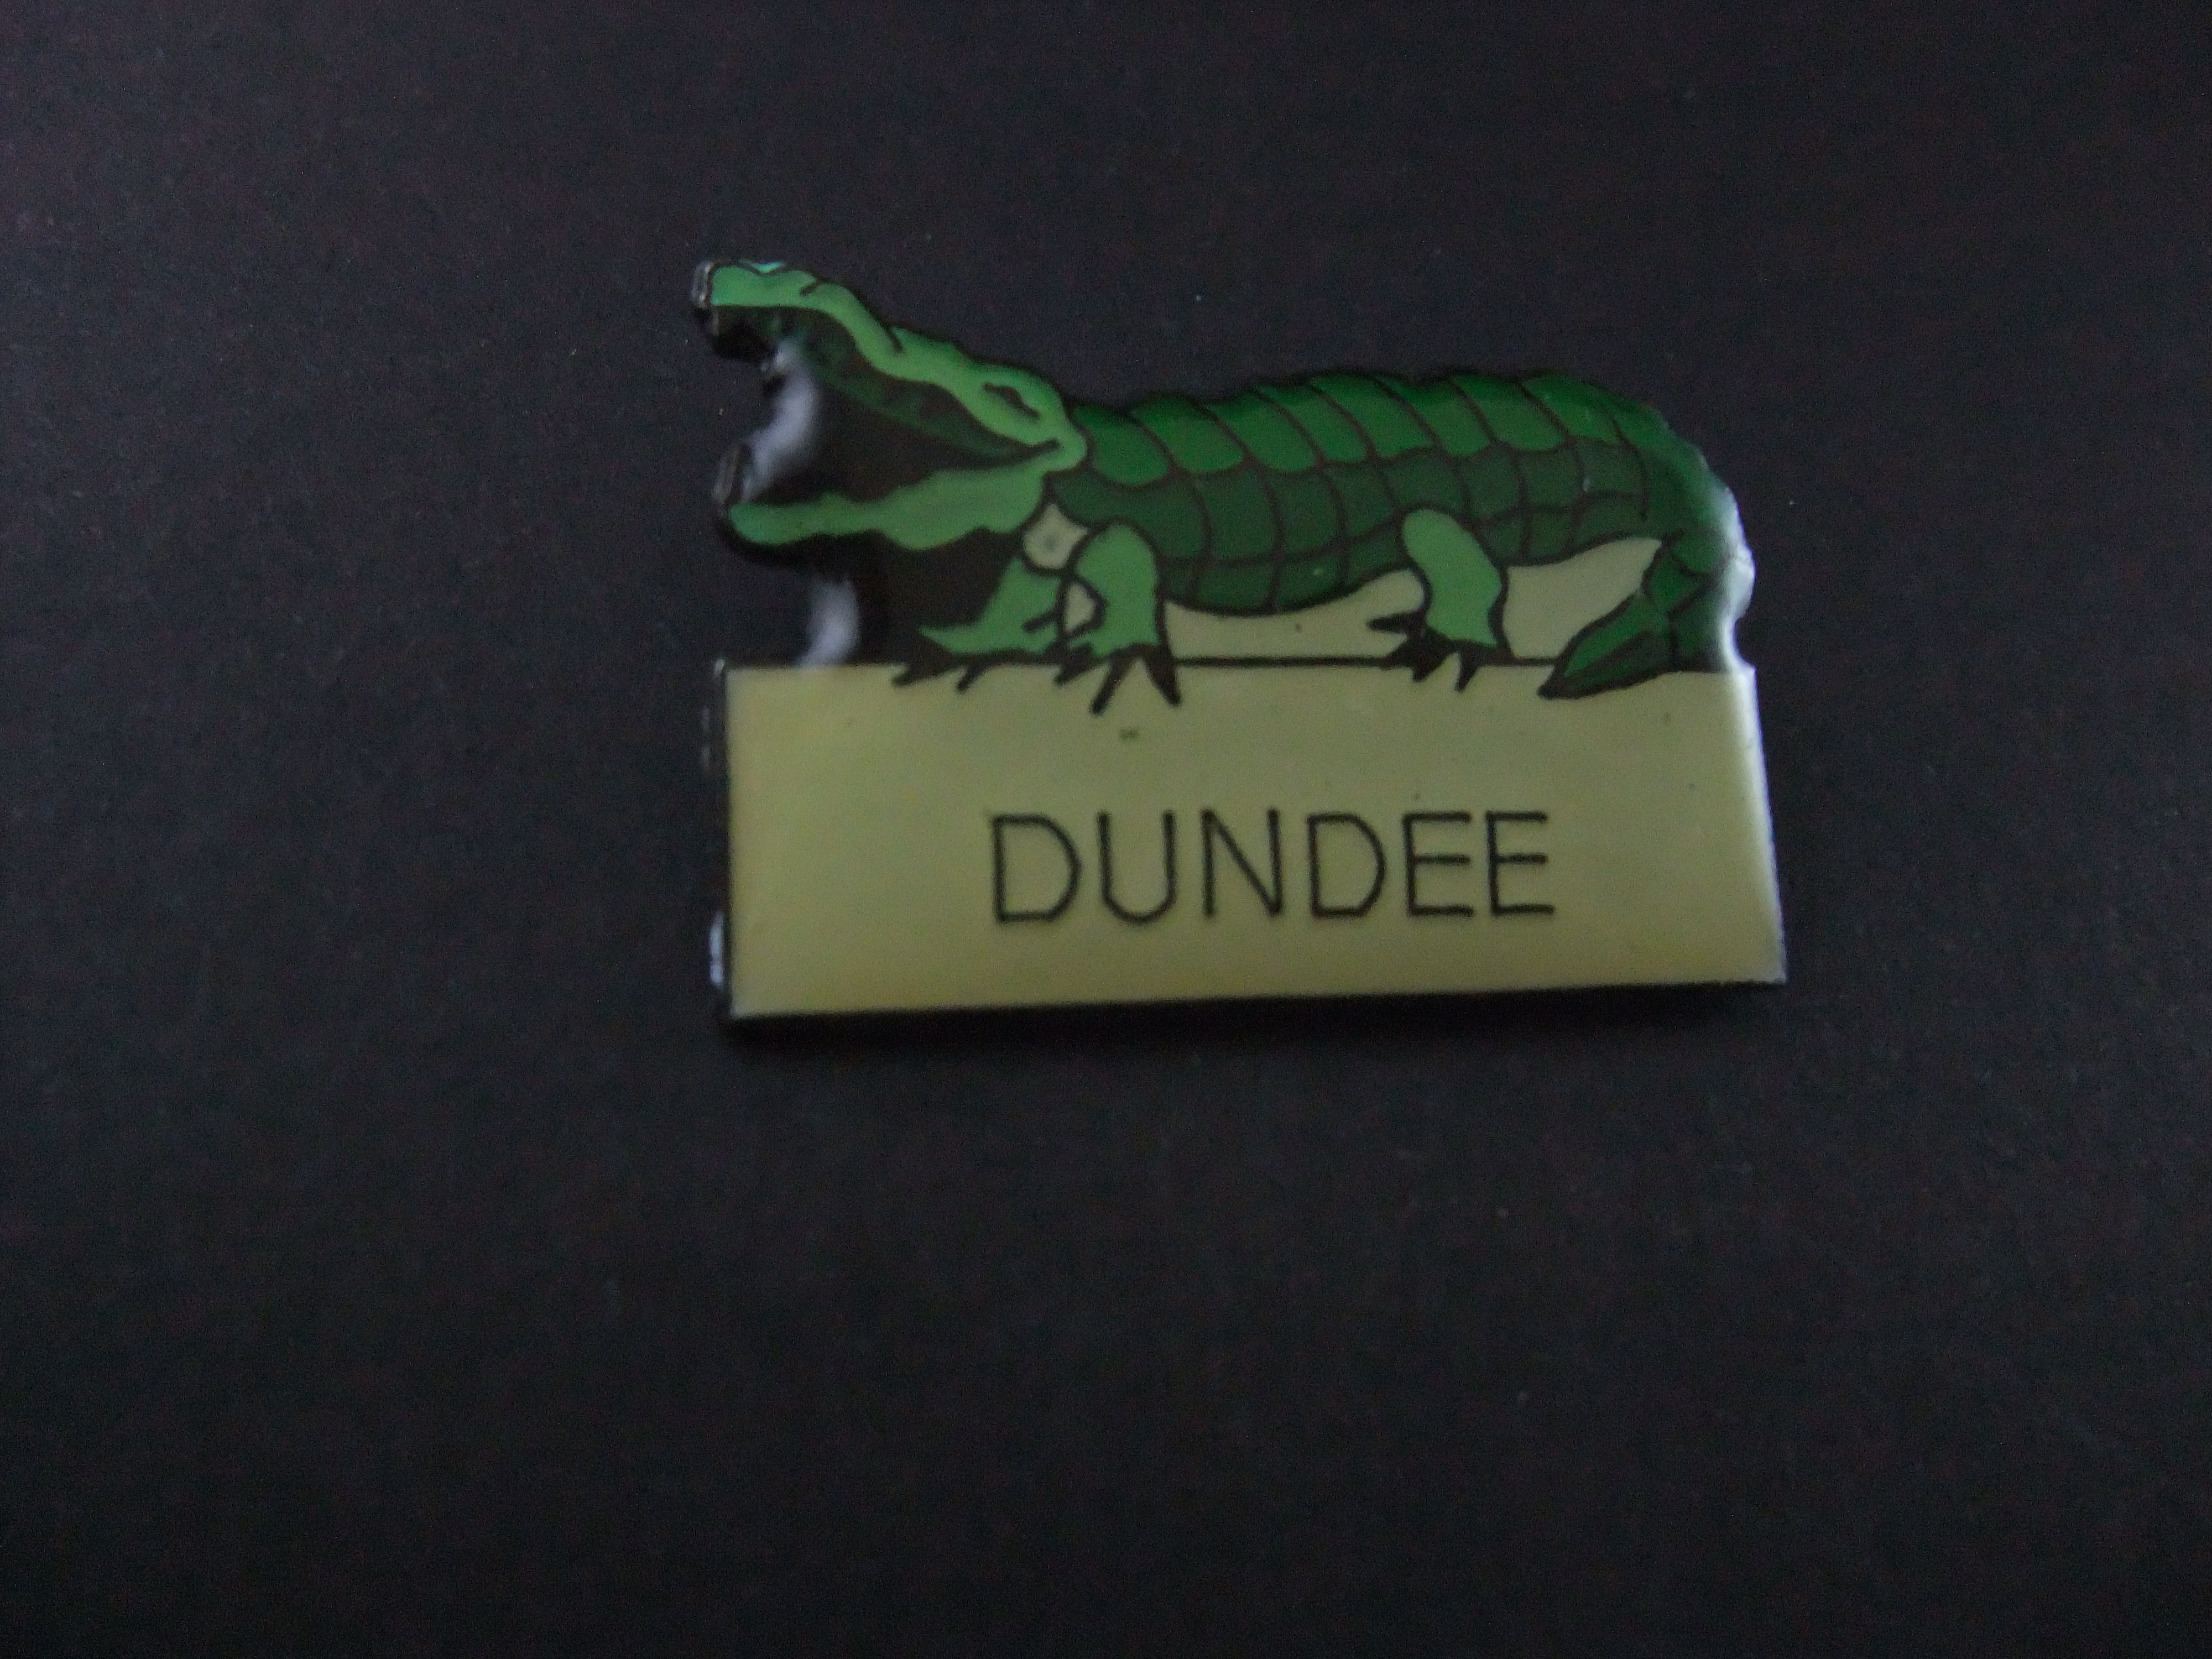 Krokodil ,Dundee ( reptiel)